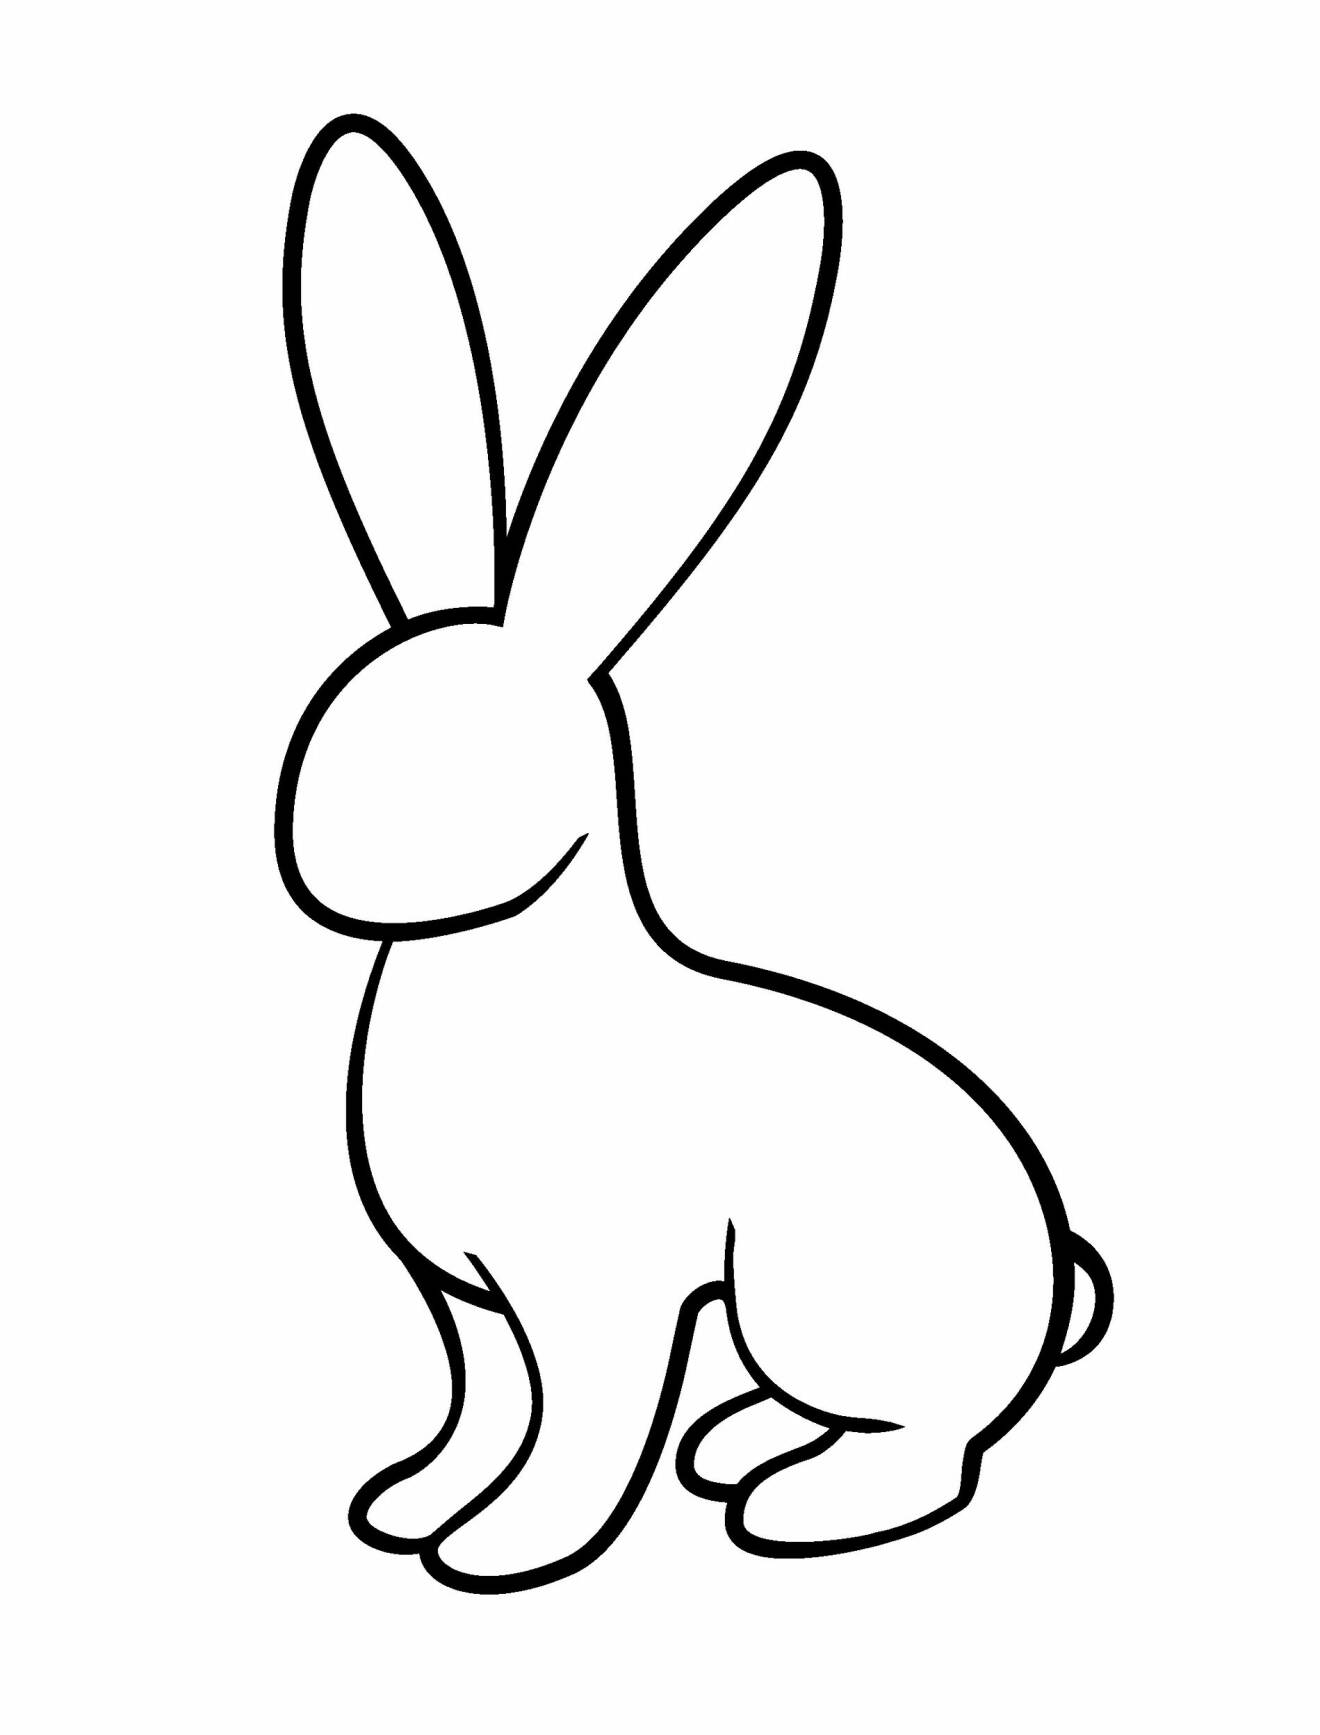 En tecknad kanin i profil